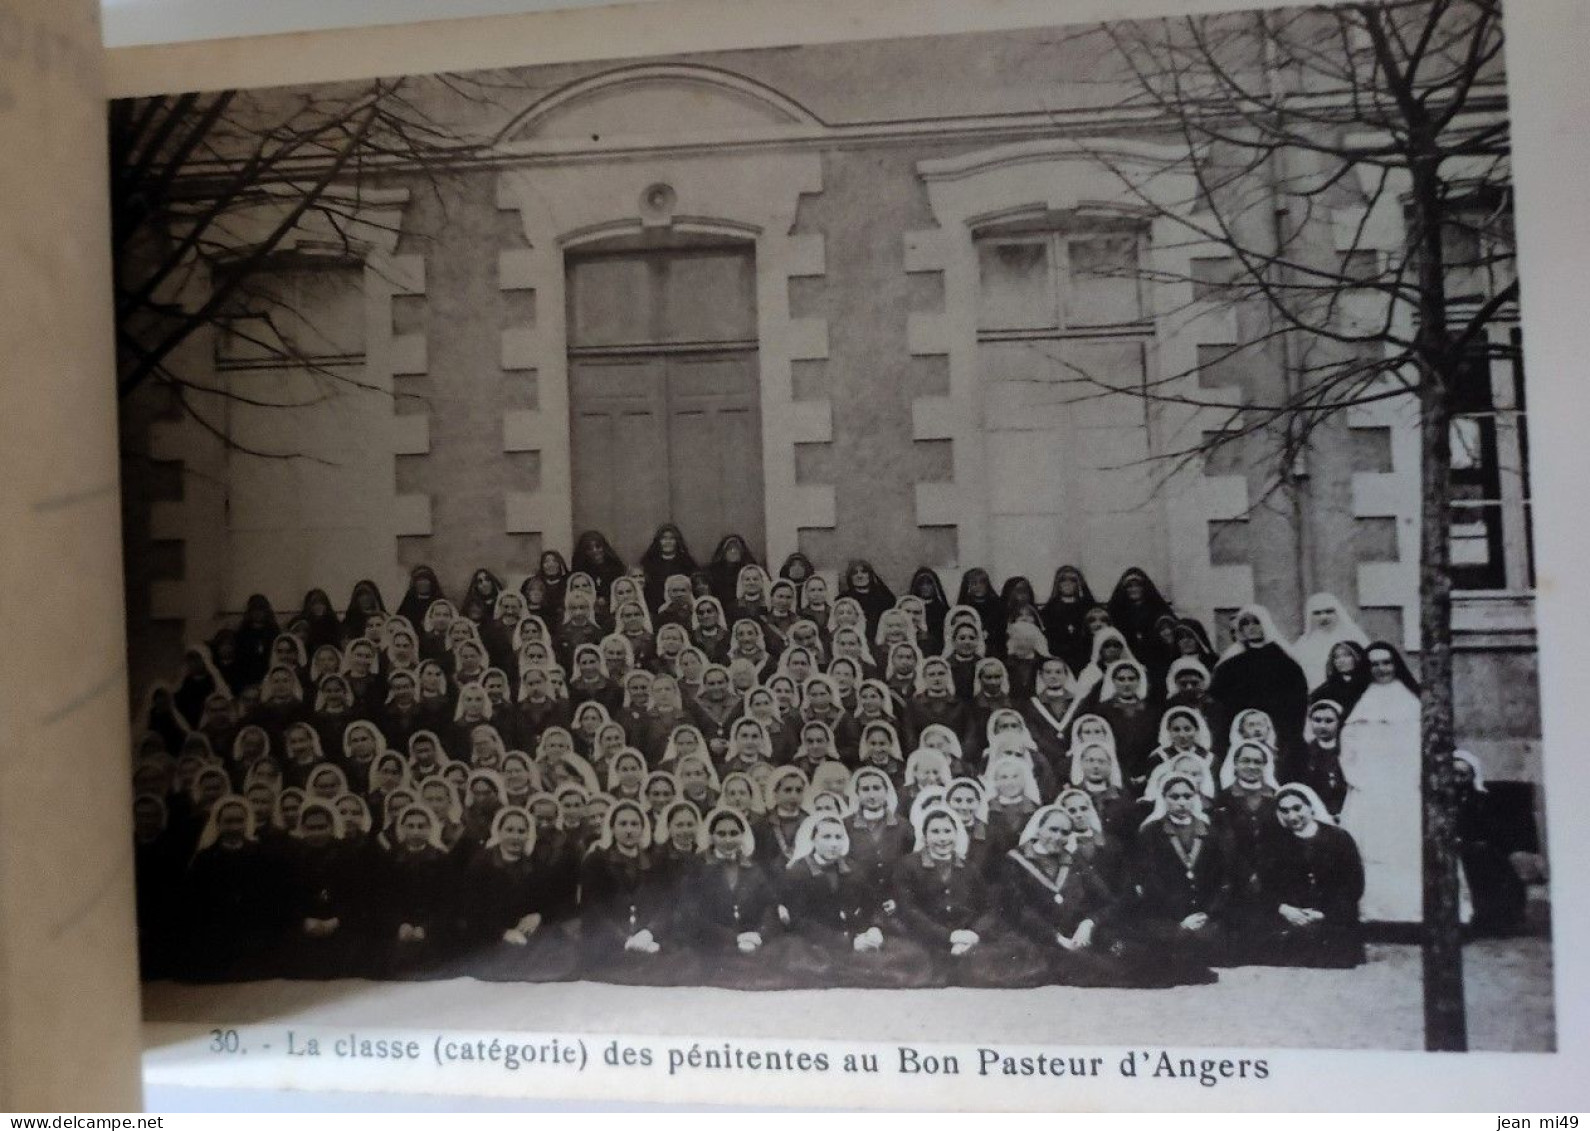 49 - ANGERS - Carnet De 50 Cartes Postales - Bienheureurse Marie-Euphrasie Pelletier Fondatrice Du BON PASTEUR D'ANGERS - Angers